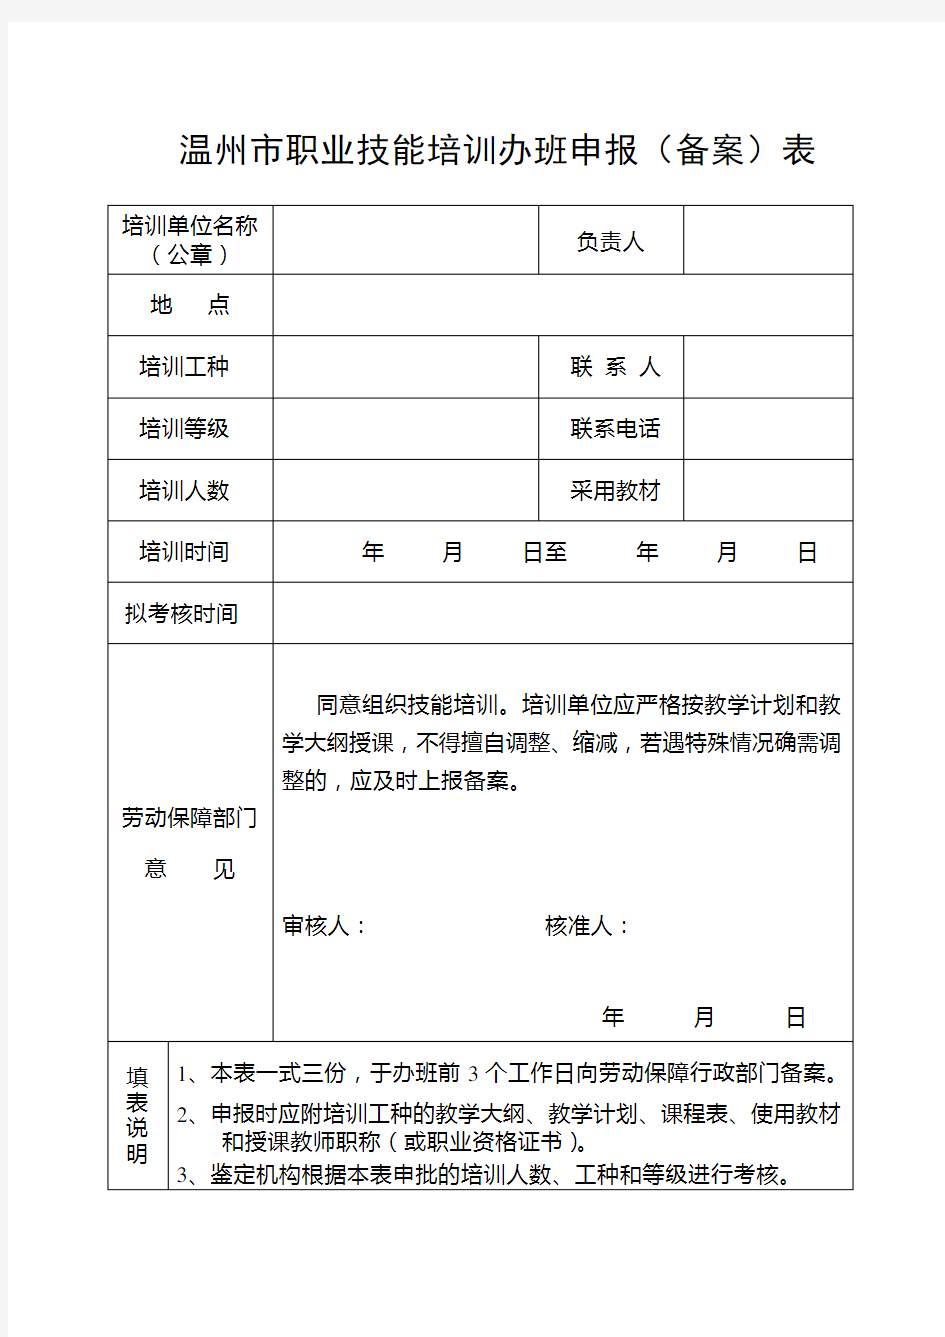 温州市职业技能培训办班申报(备案)表